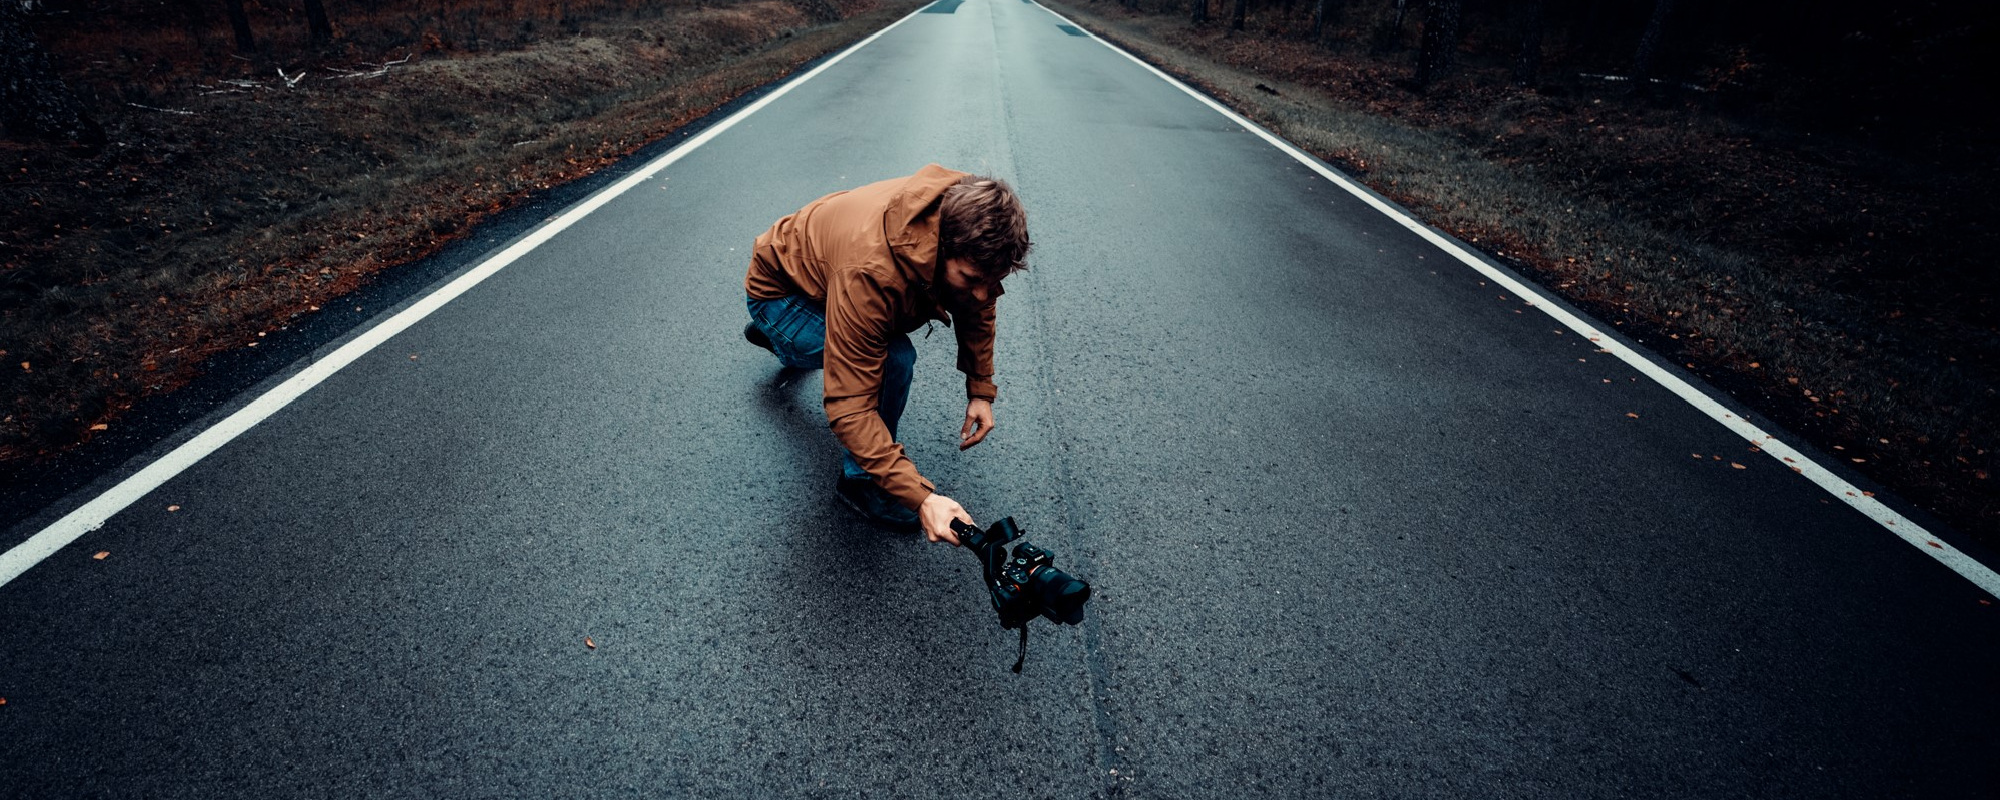 Zdjęcie - osoba na środku drogi, kucająca, trzymająca w ręku gimbala i filmująca coś z niskiej perspektywy